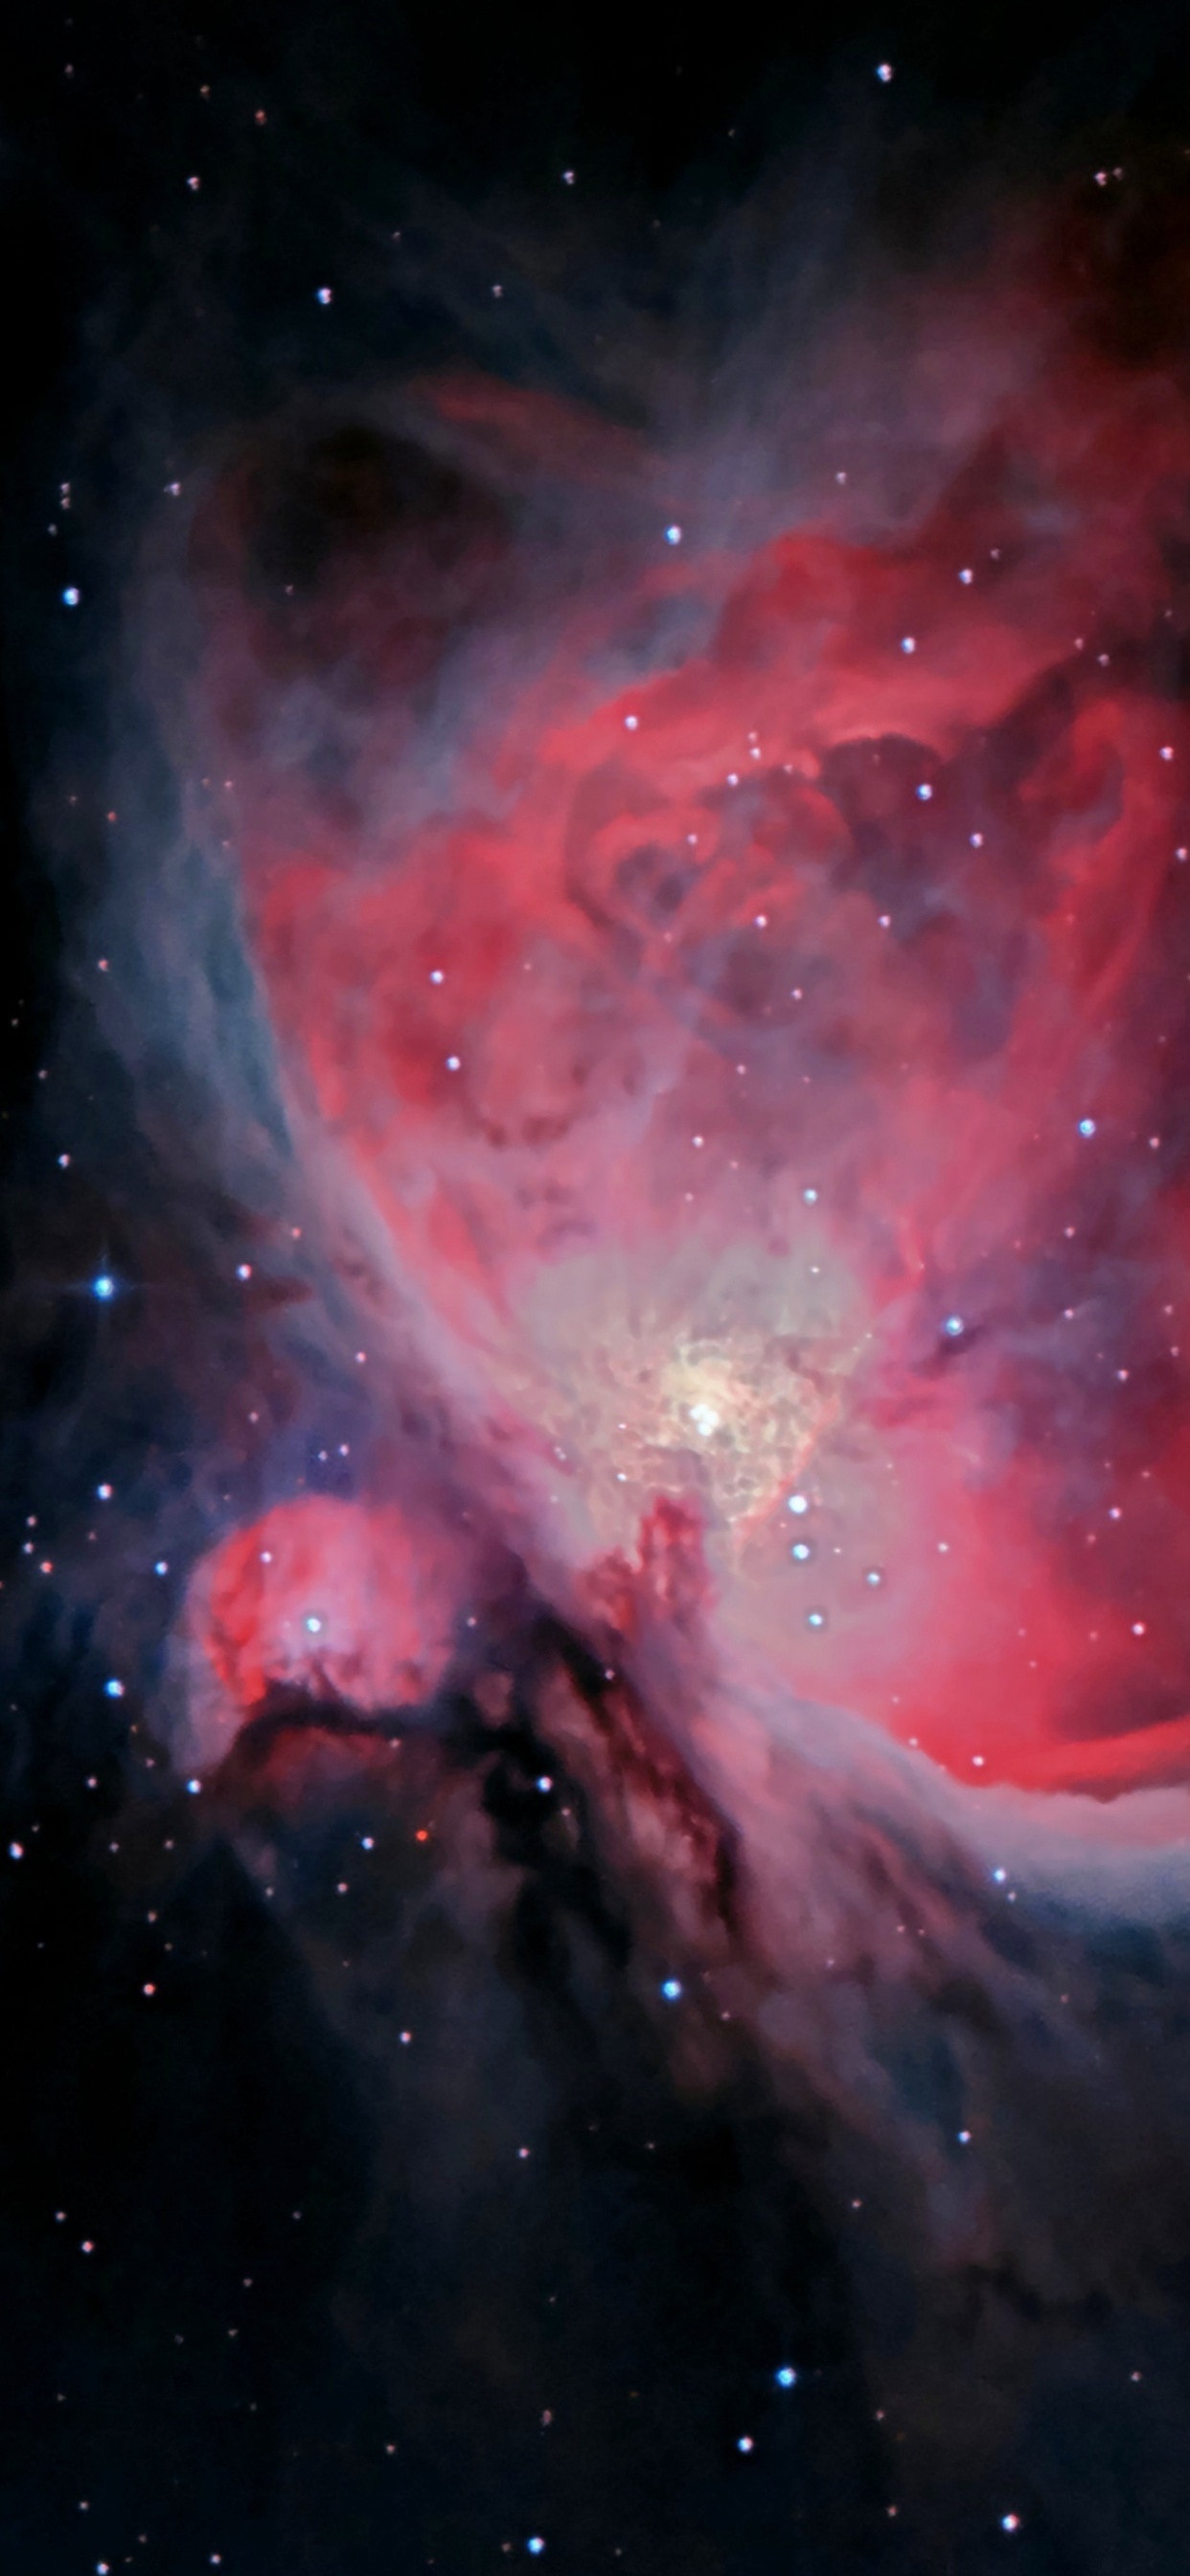 猎户座星云, Sh2-279, Orion, 明星, 外层空间 壁纸 1242x2688 允许